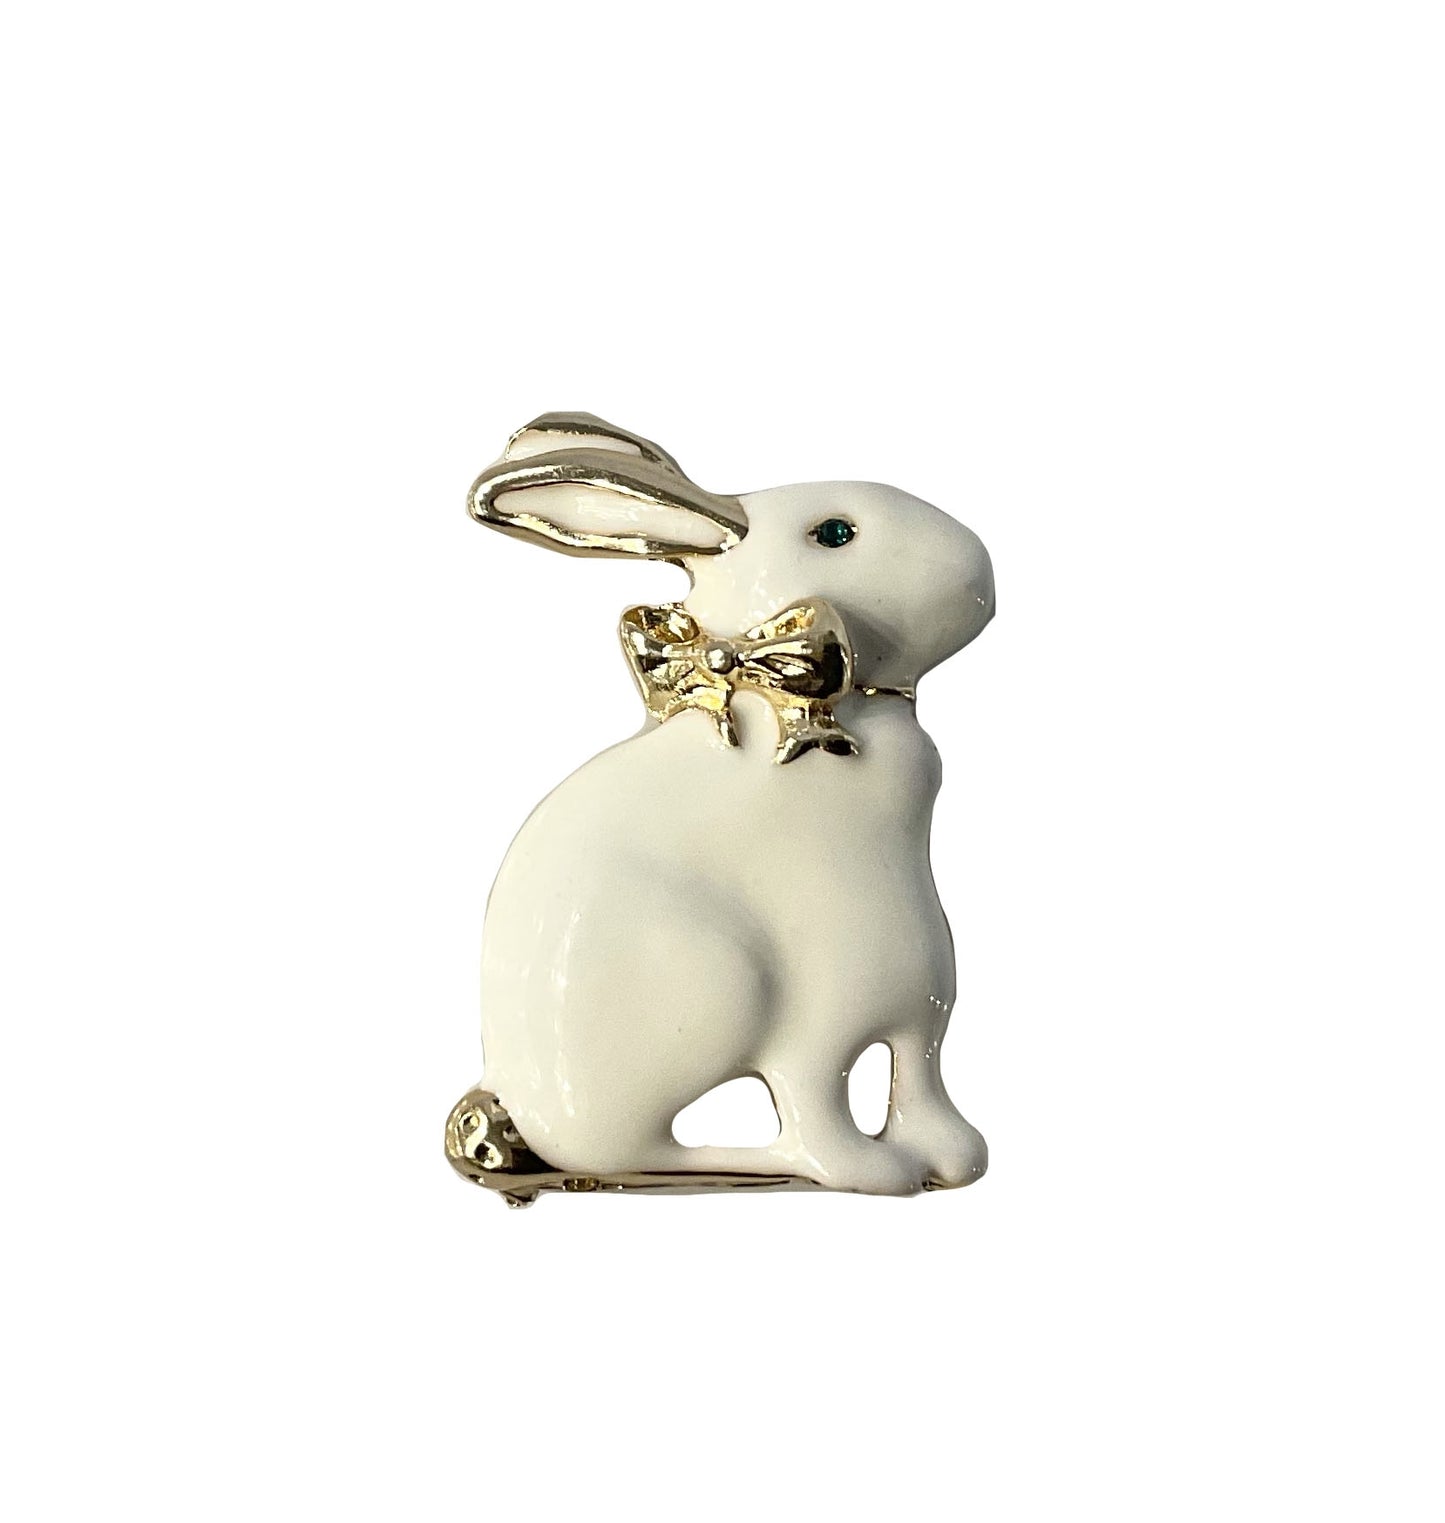 Rabbit with Gold Ribbon Pin #38-1546